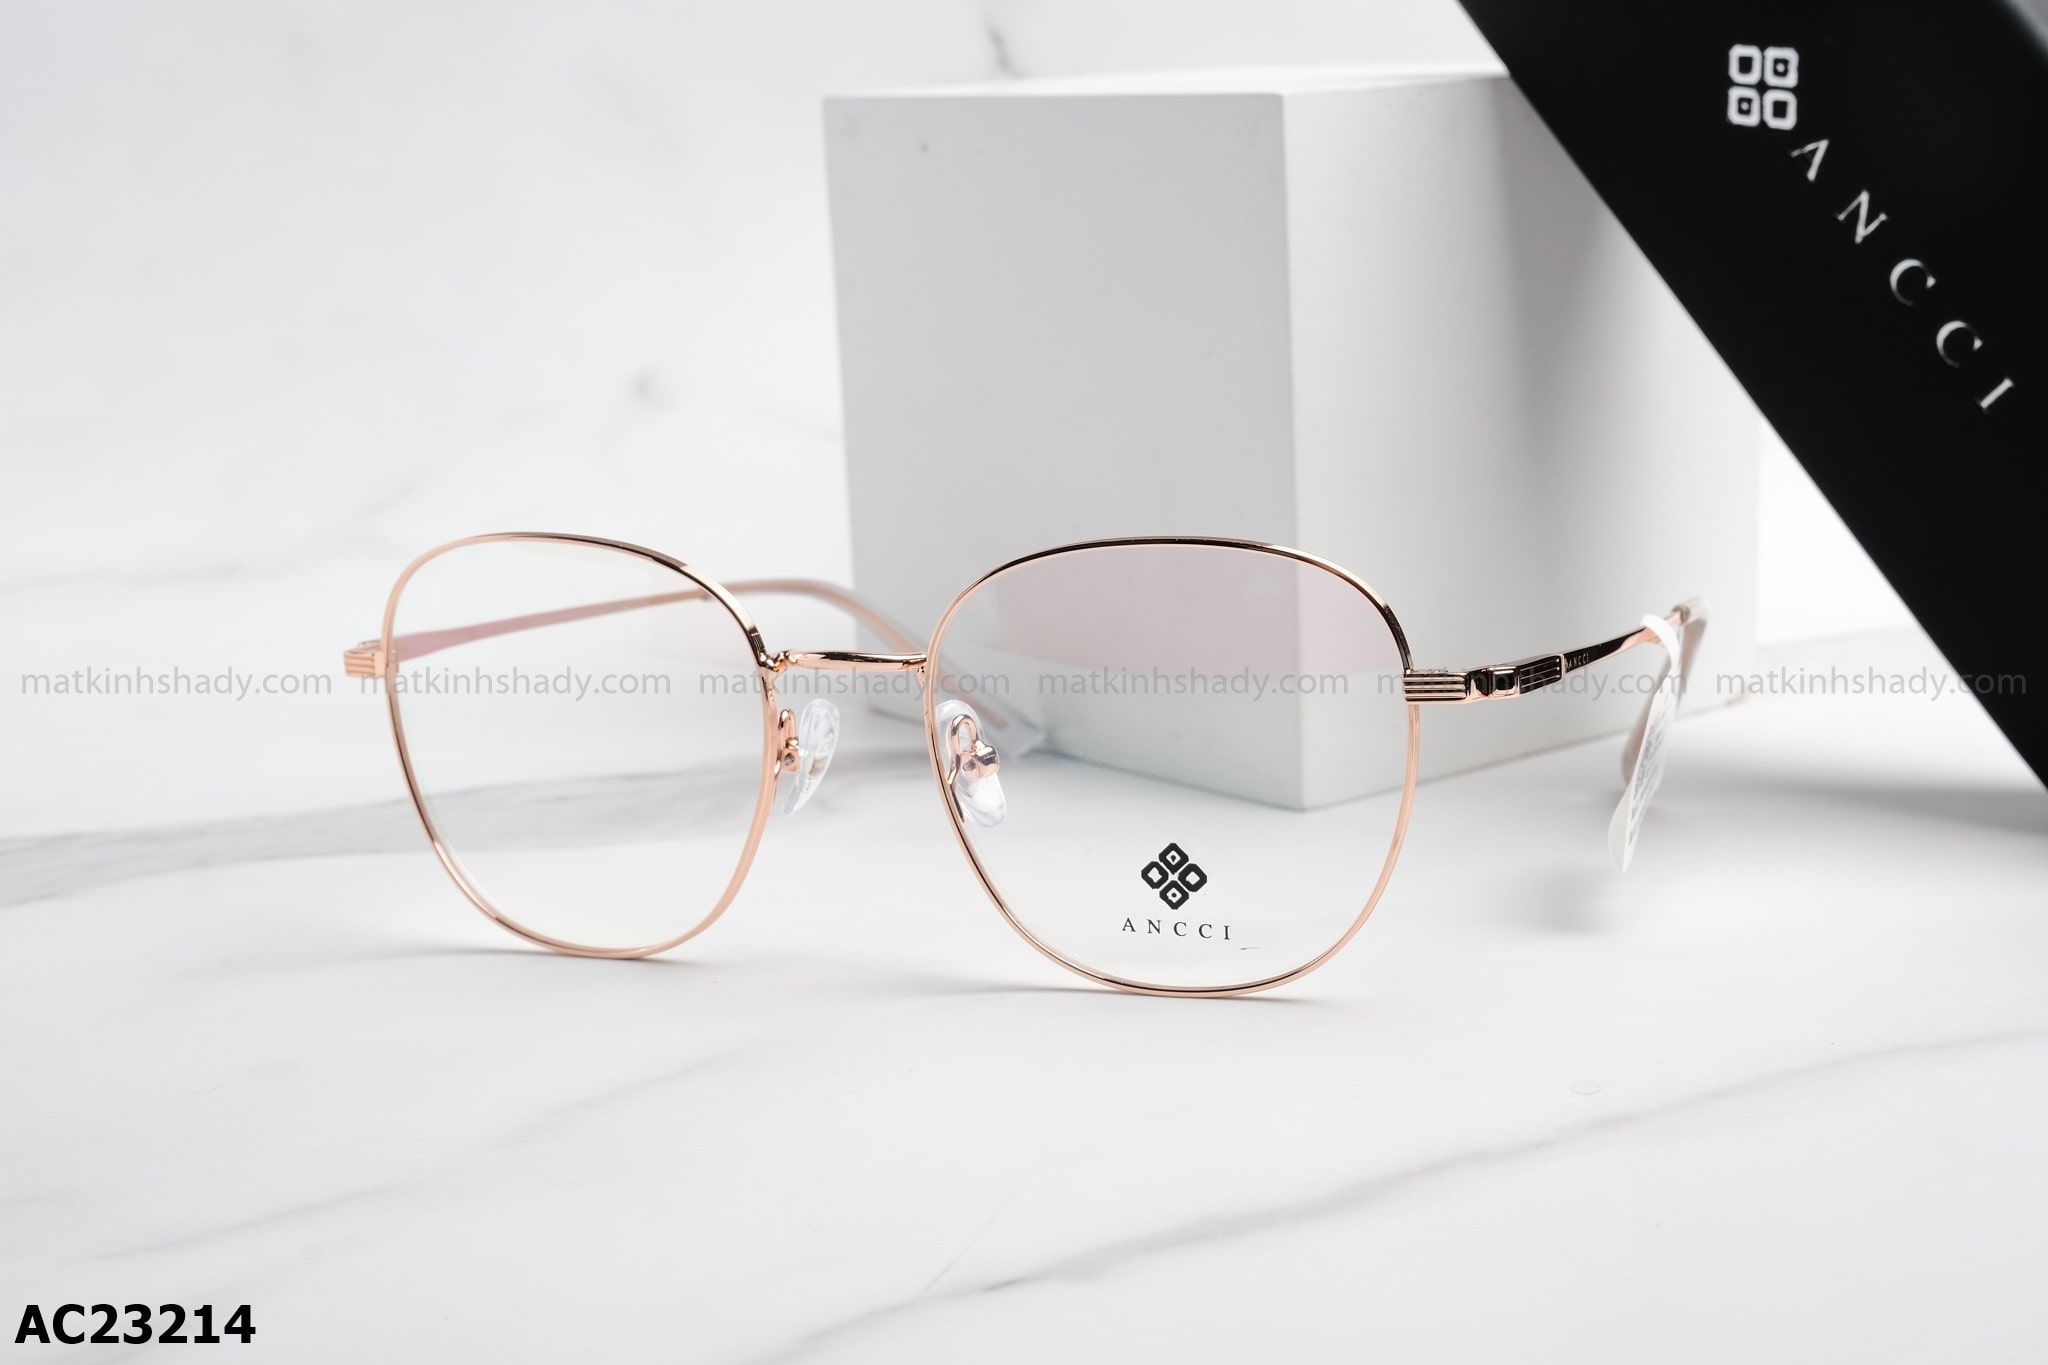  ANCCI Eyewear - Glasses - AC23214 